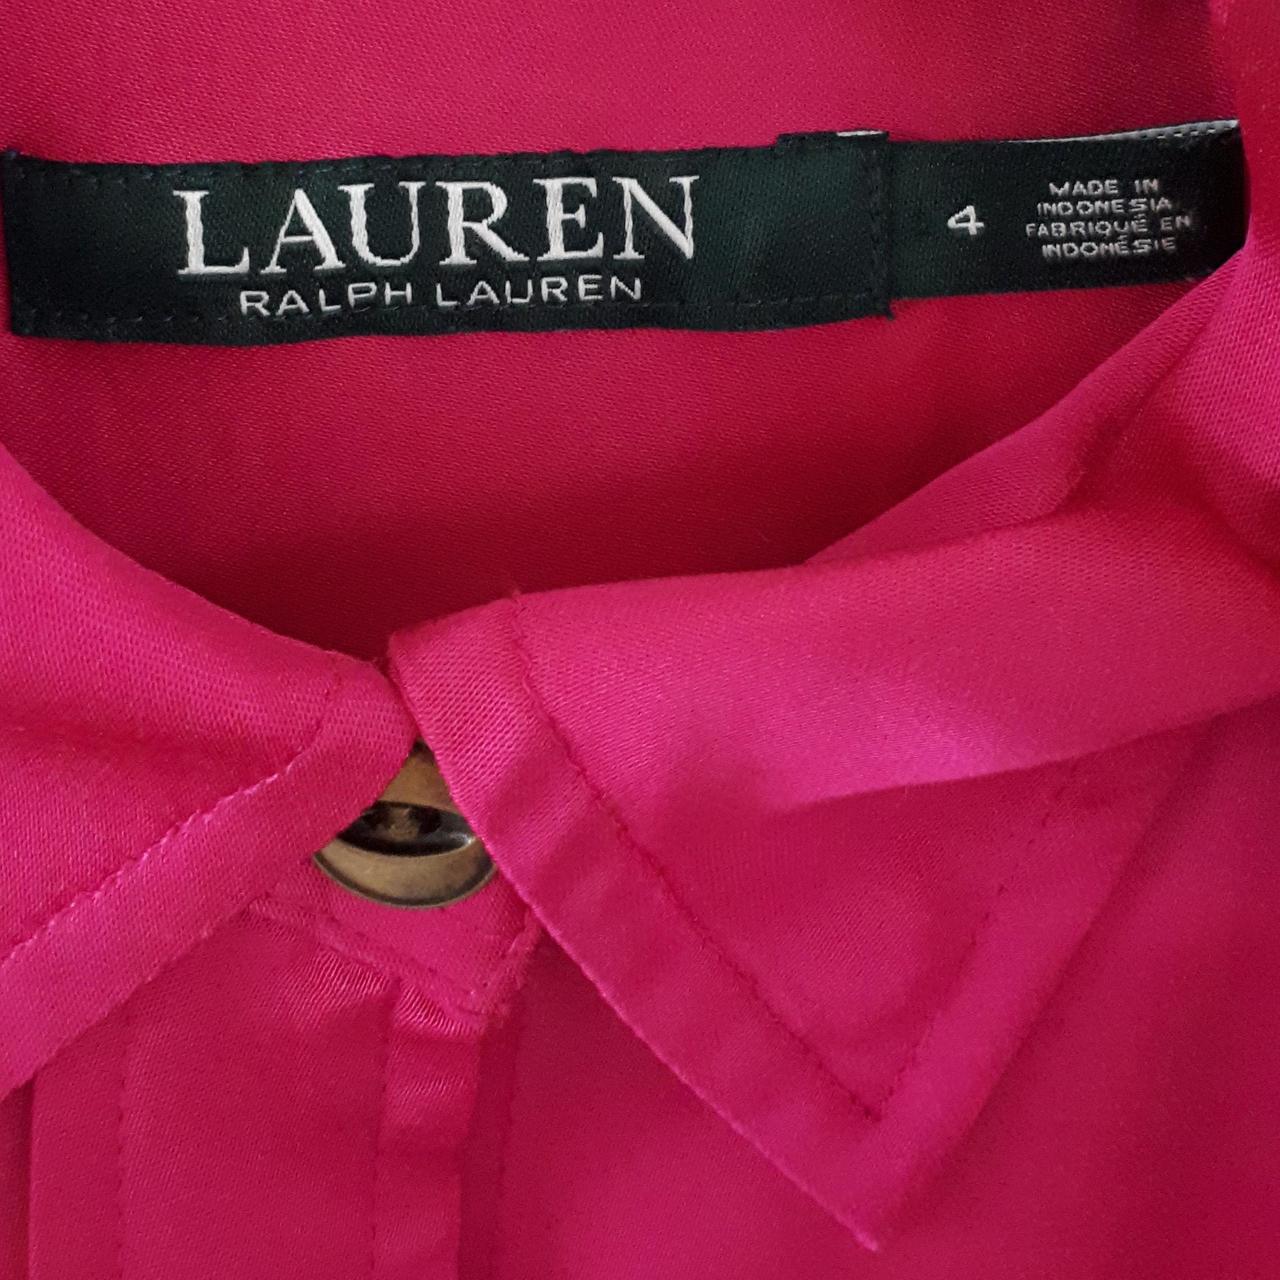 Ralph Lauren fushia pink silk/satin shirt dress. Can... - Depop